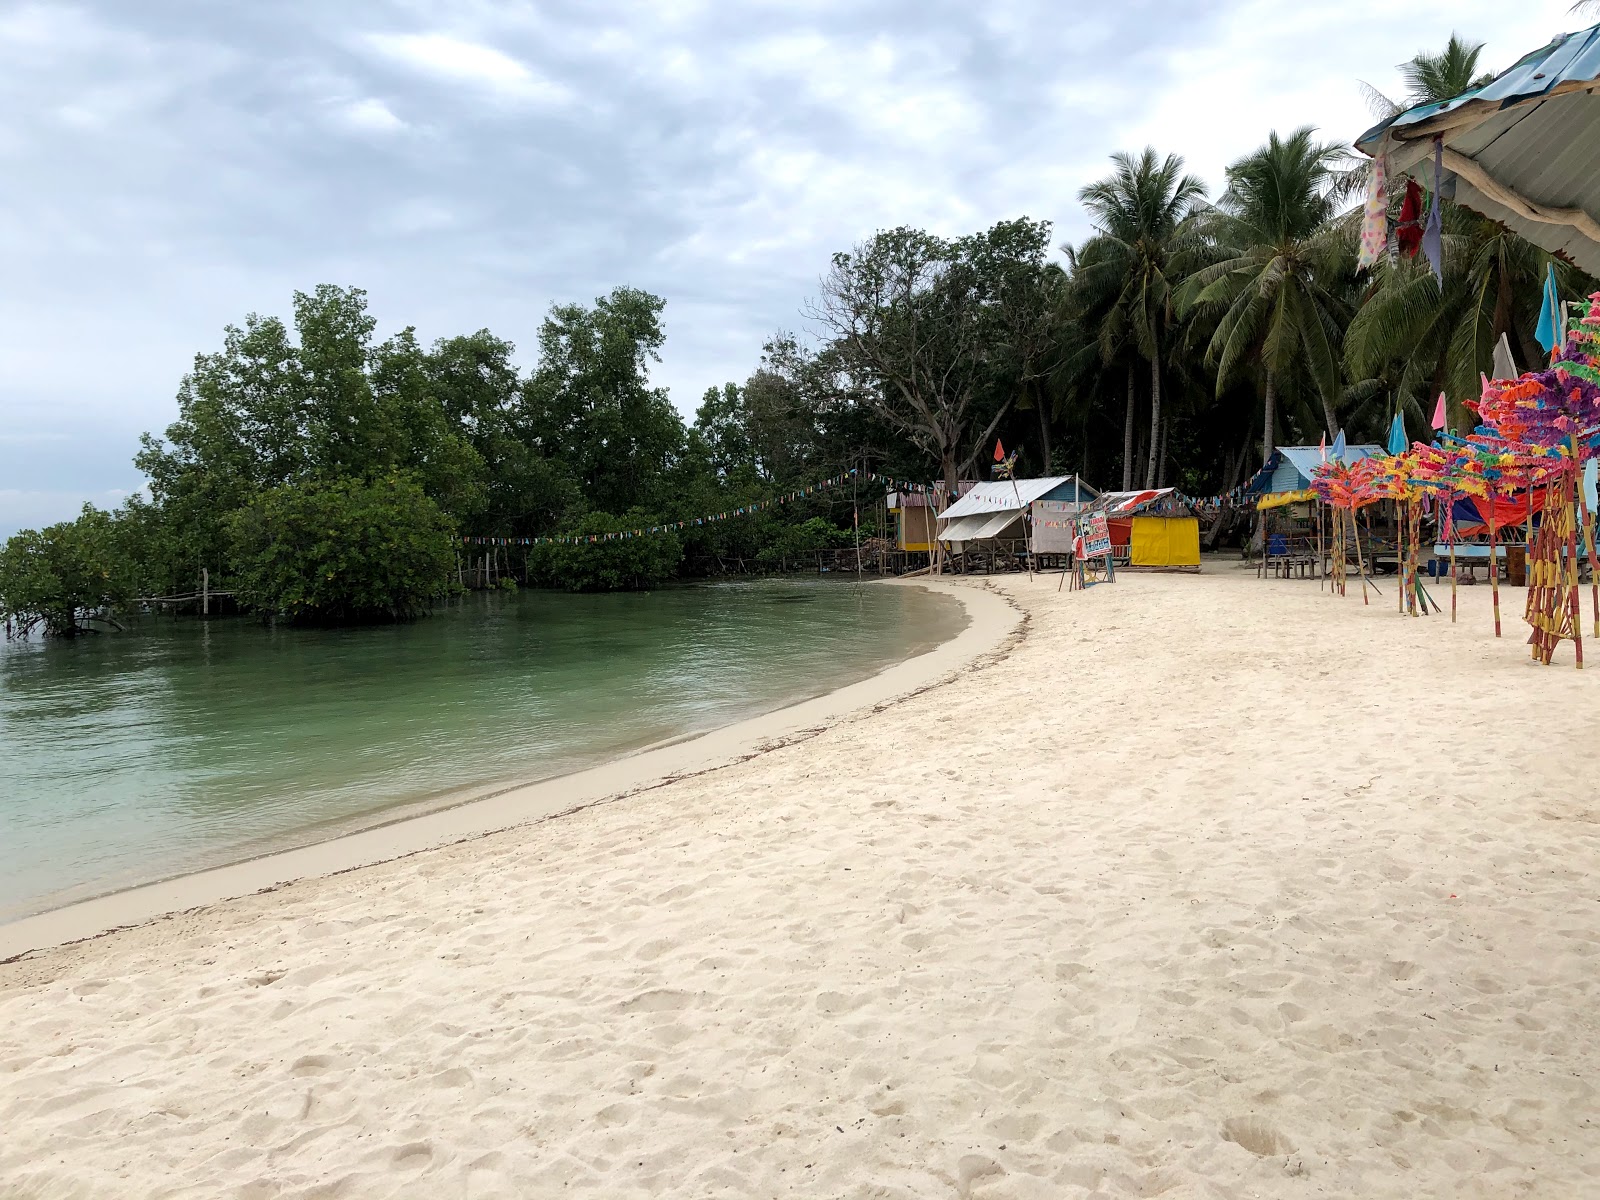 Wisata Pulau Mubut Darat'in fotoğrafı parlak kum yüzey ile